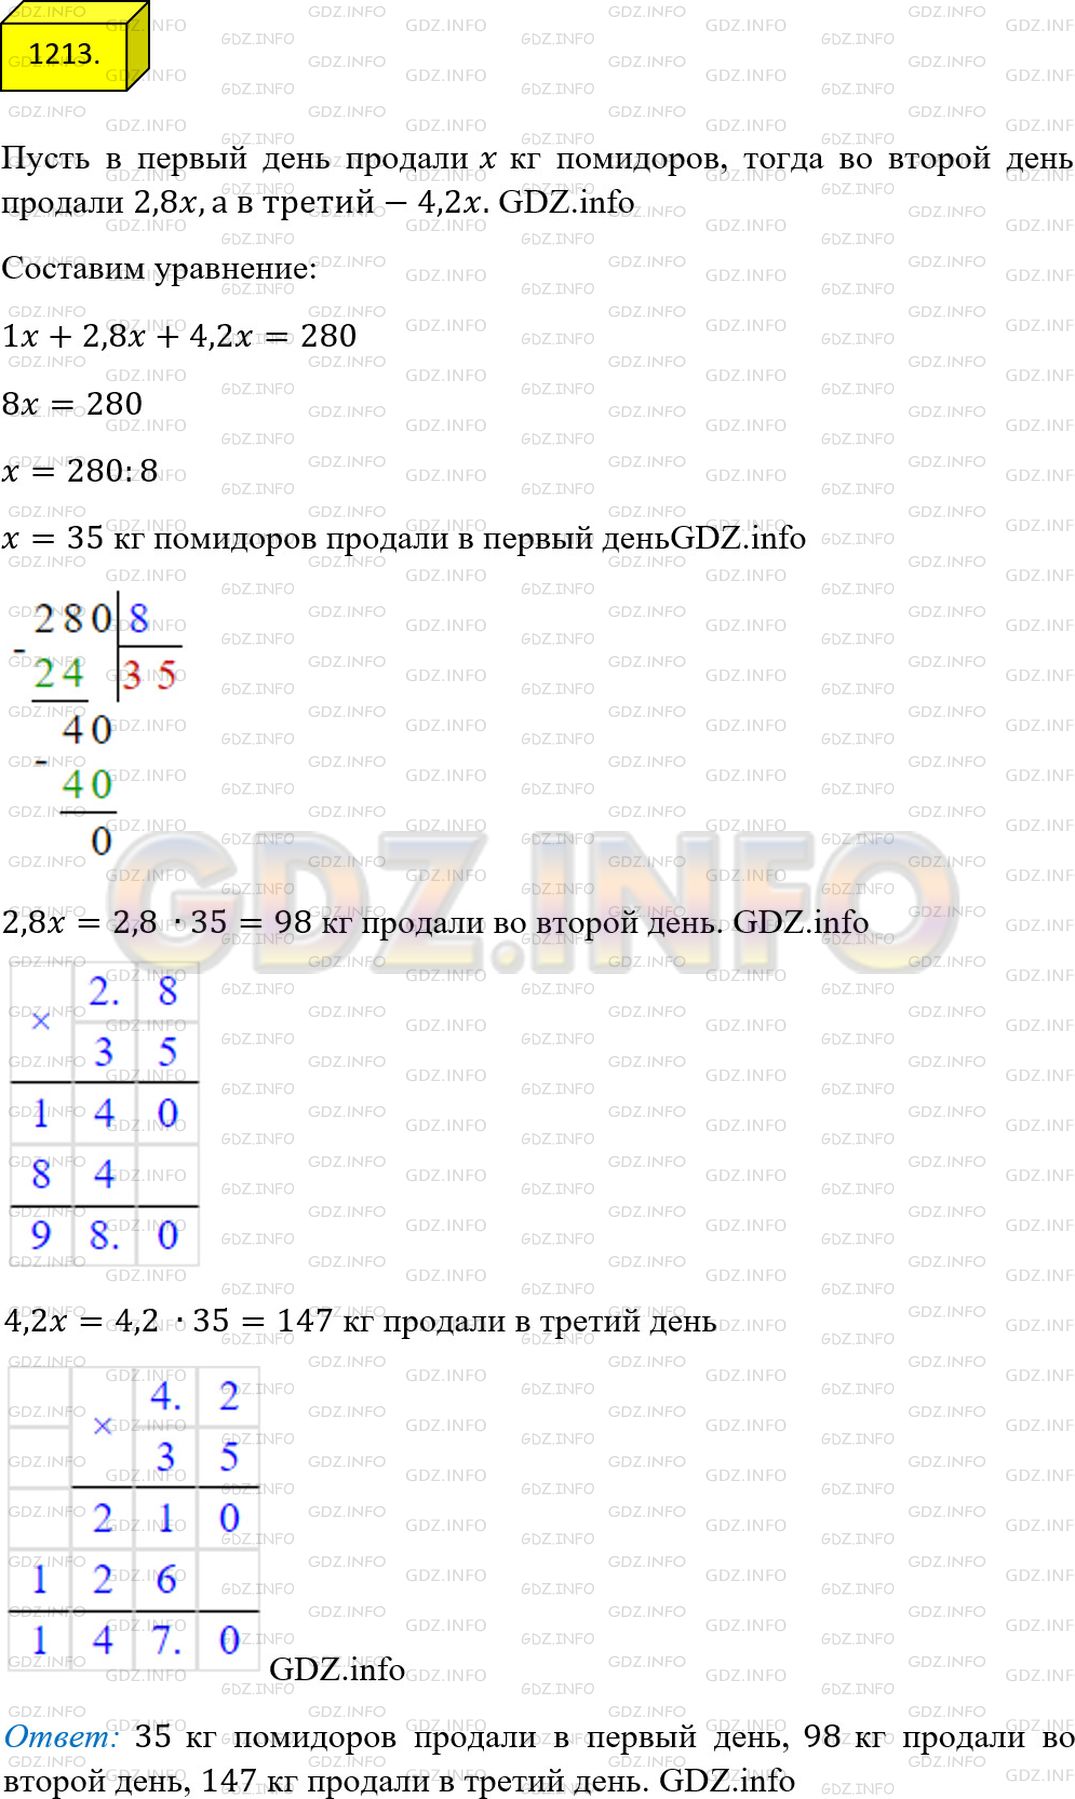 Фото ответа 4 на Задание 1213 из ГДЗ по Математике за 5 класс: А.Г. Мерзляк, В.Б. Полонский, М.С. Якир. 2014г.